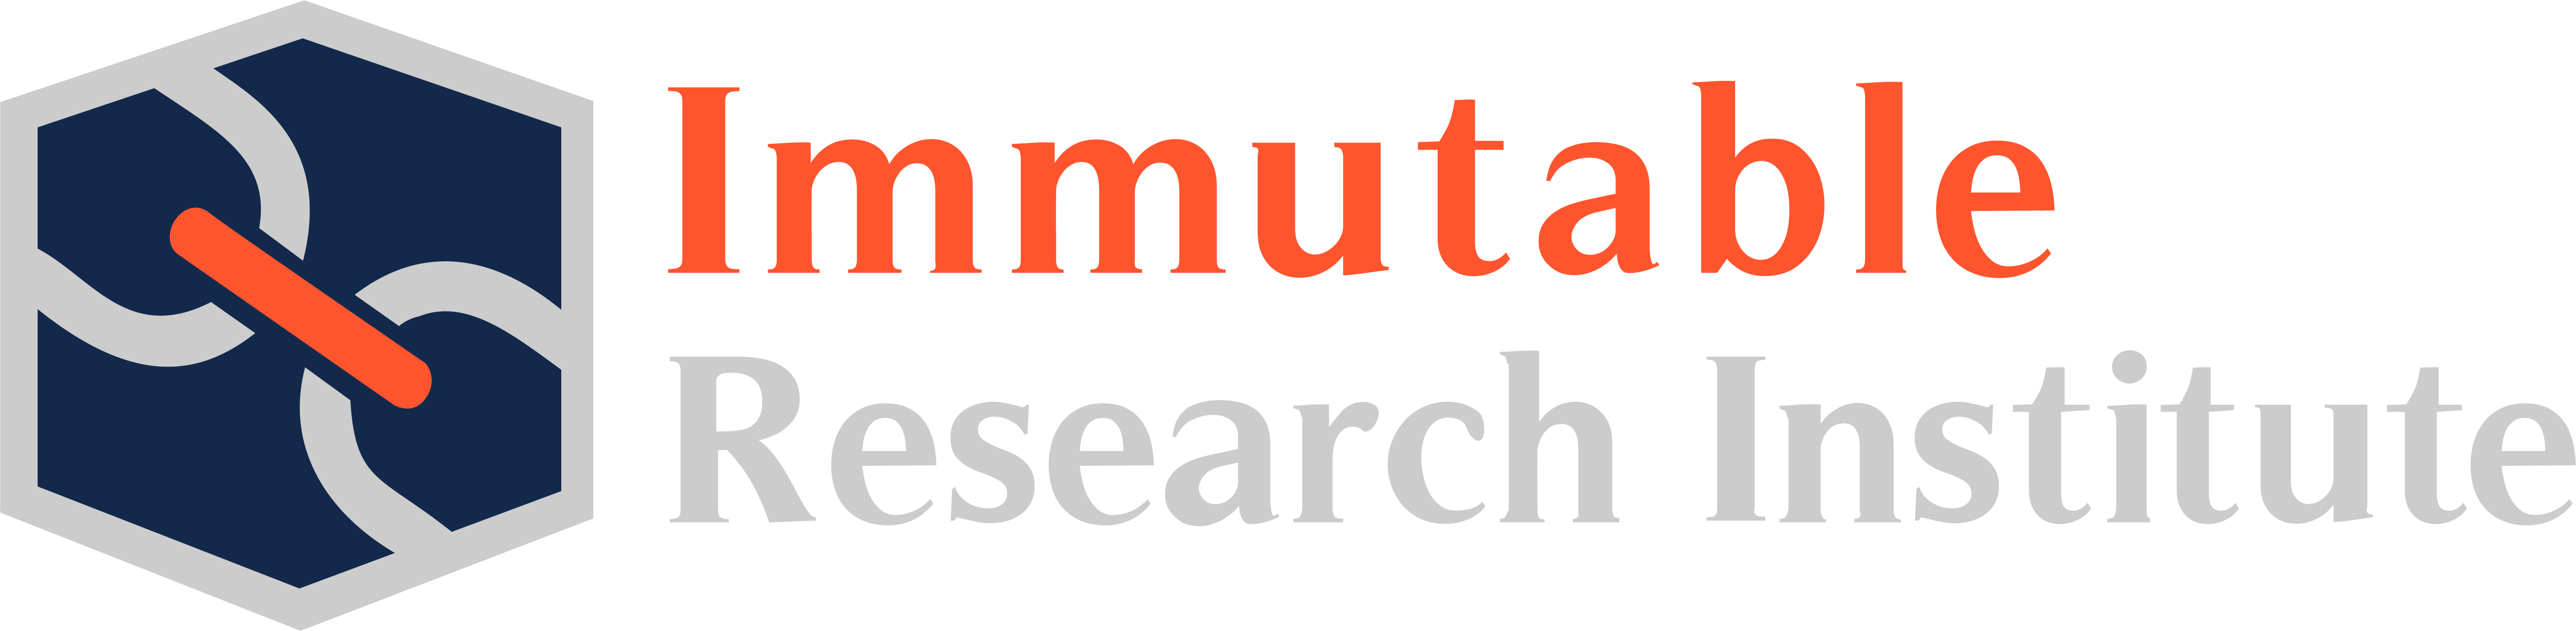 Immutable Research Institute